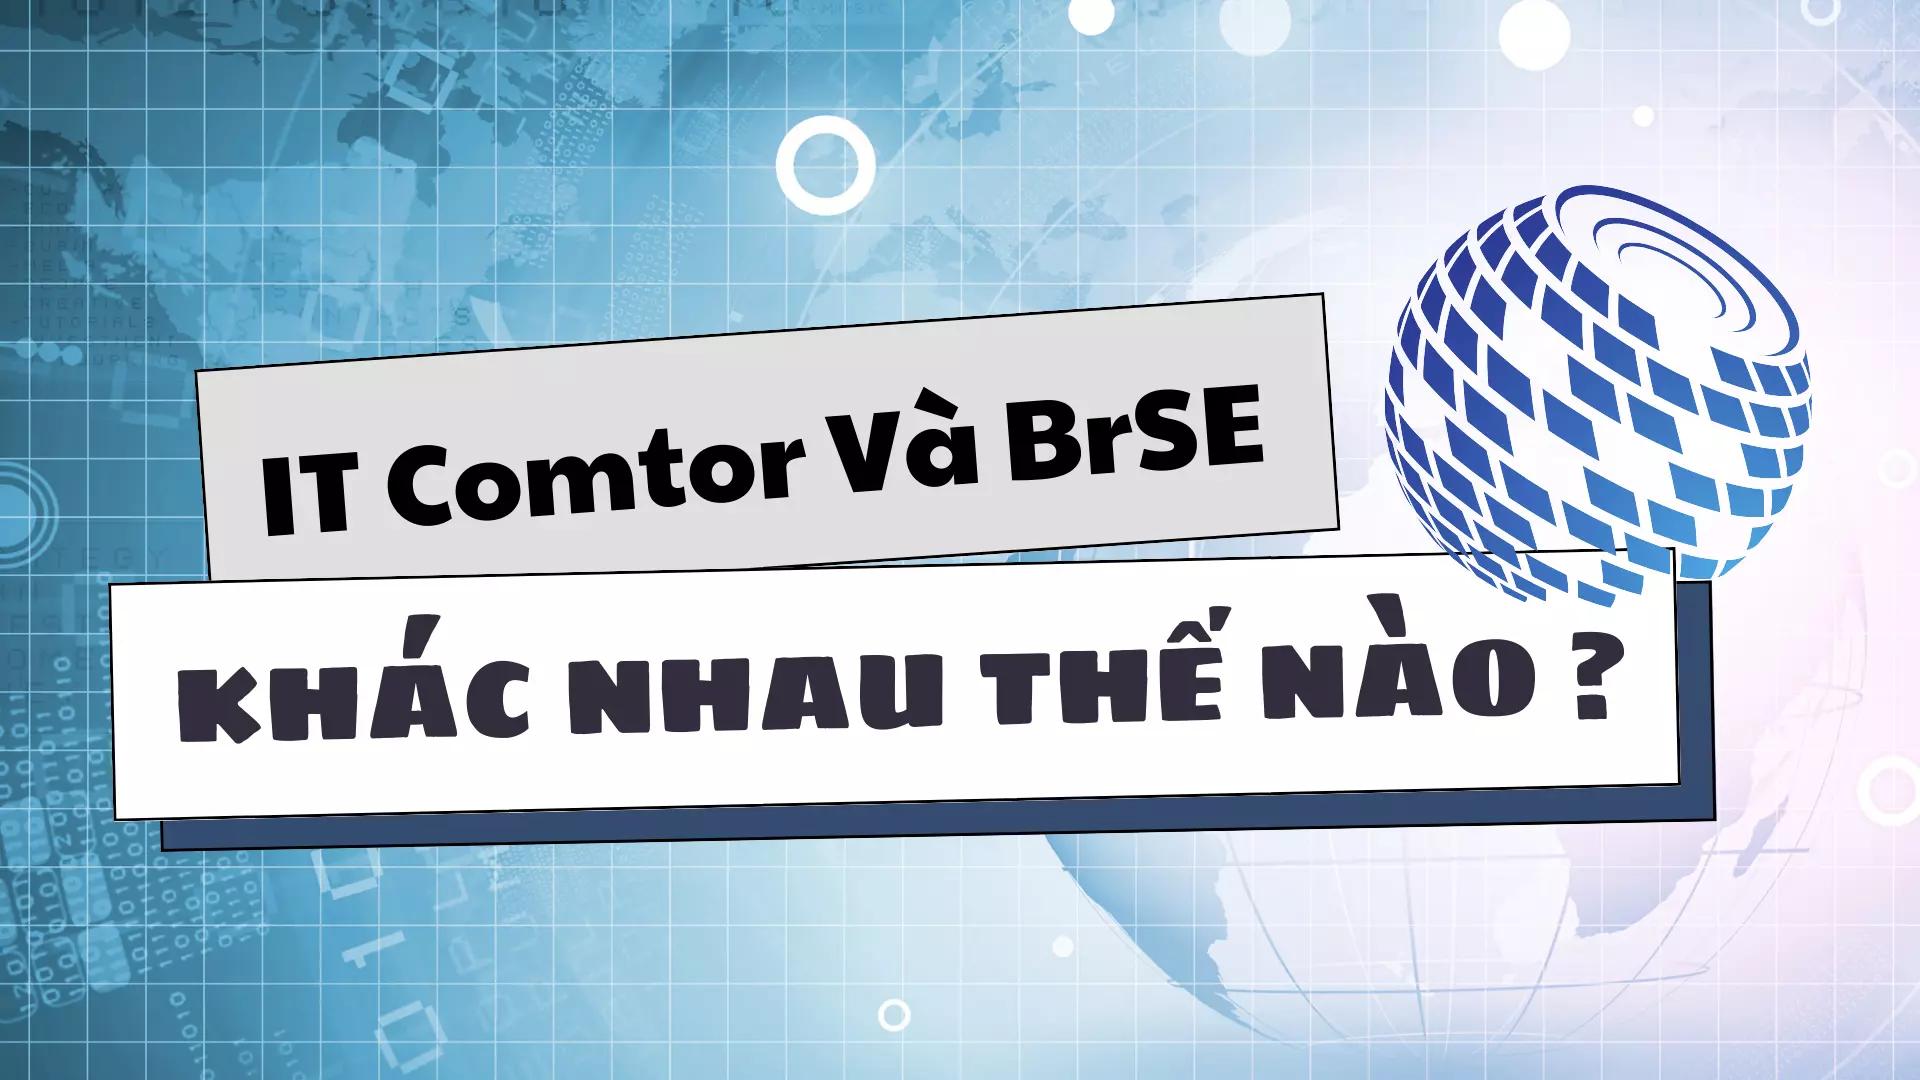 AnyConv.com__IT Comtor và BrSE khác nhau như thế nào.webp